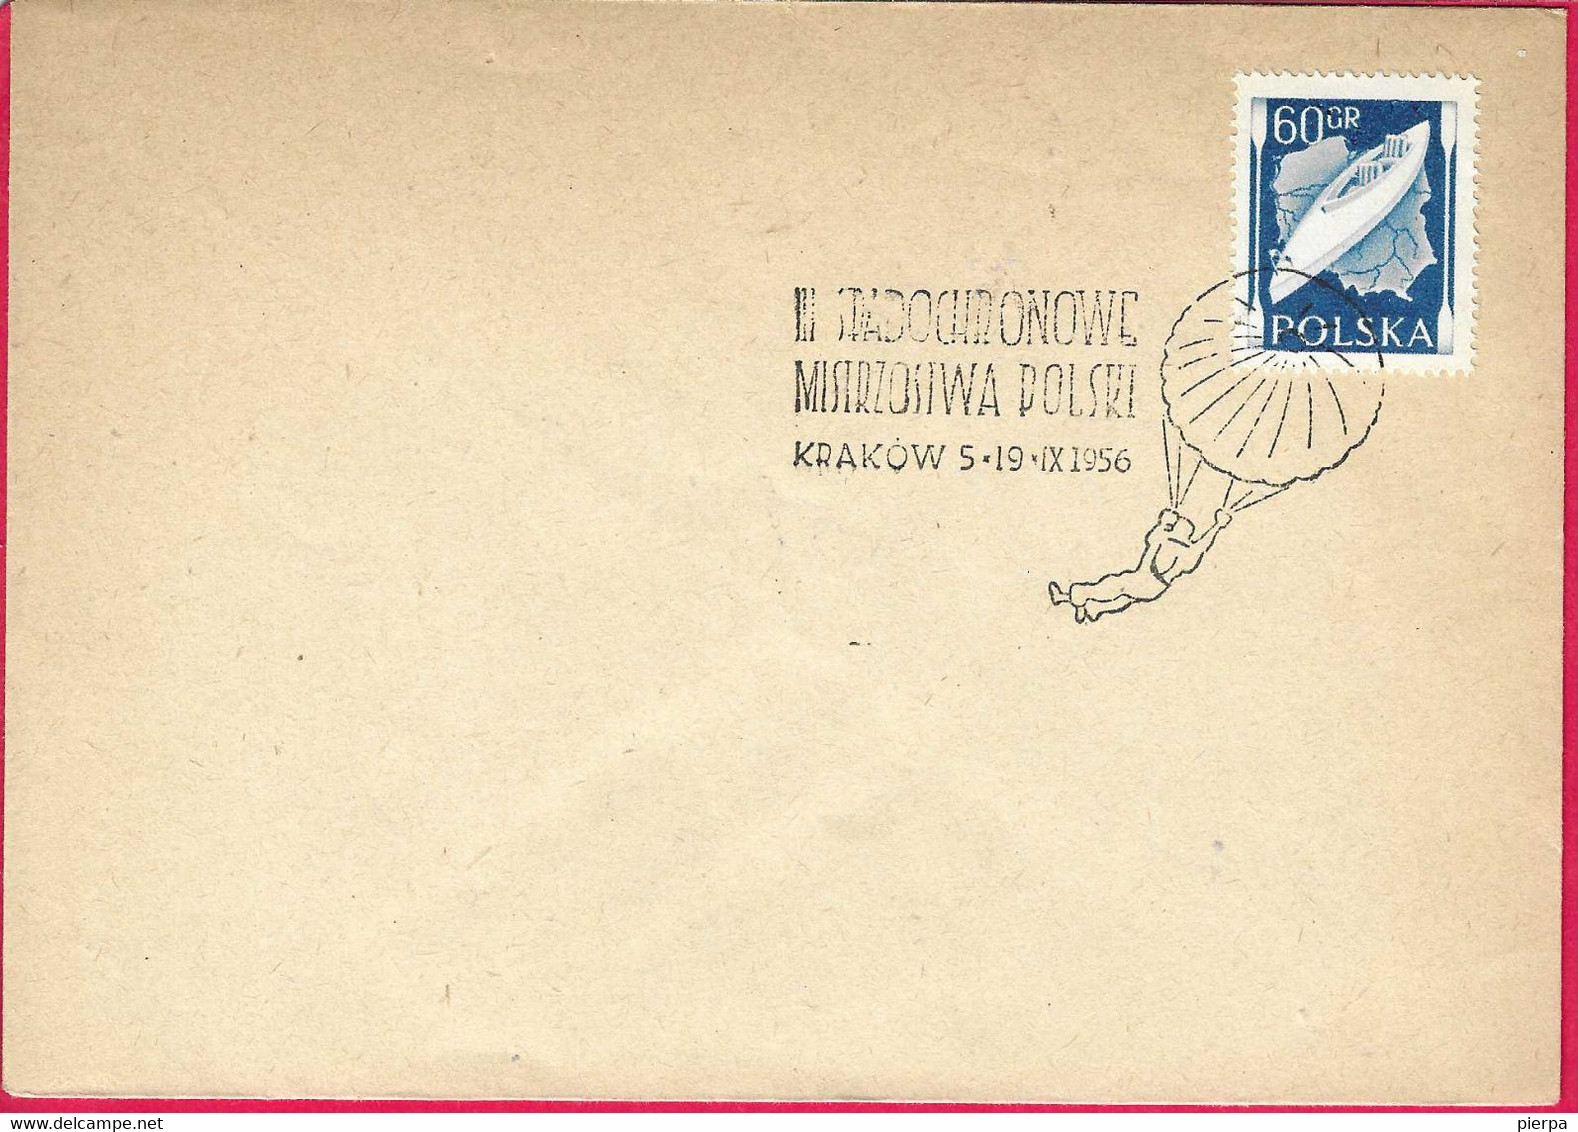 POLONIA - ANNULLO SPECIALE PARACADUTISMO - KRAKOW * 5.19..1956* SU BUSTA GRANDE - Parachutespringen